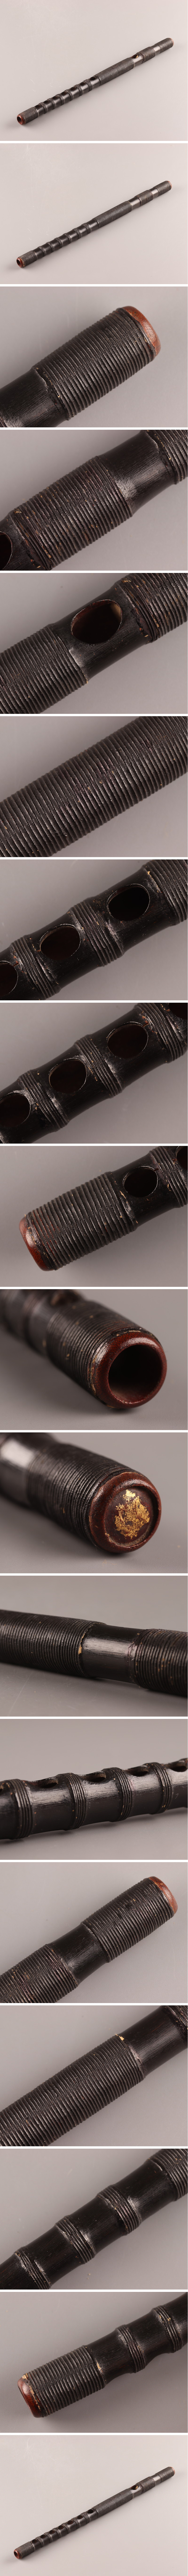 古美術時代和楽器竹製竜笛能管時代物極上品初だし品9905－日本代購代